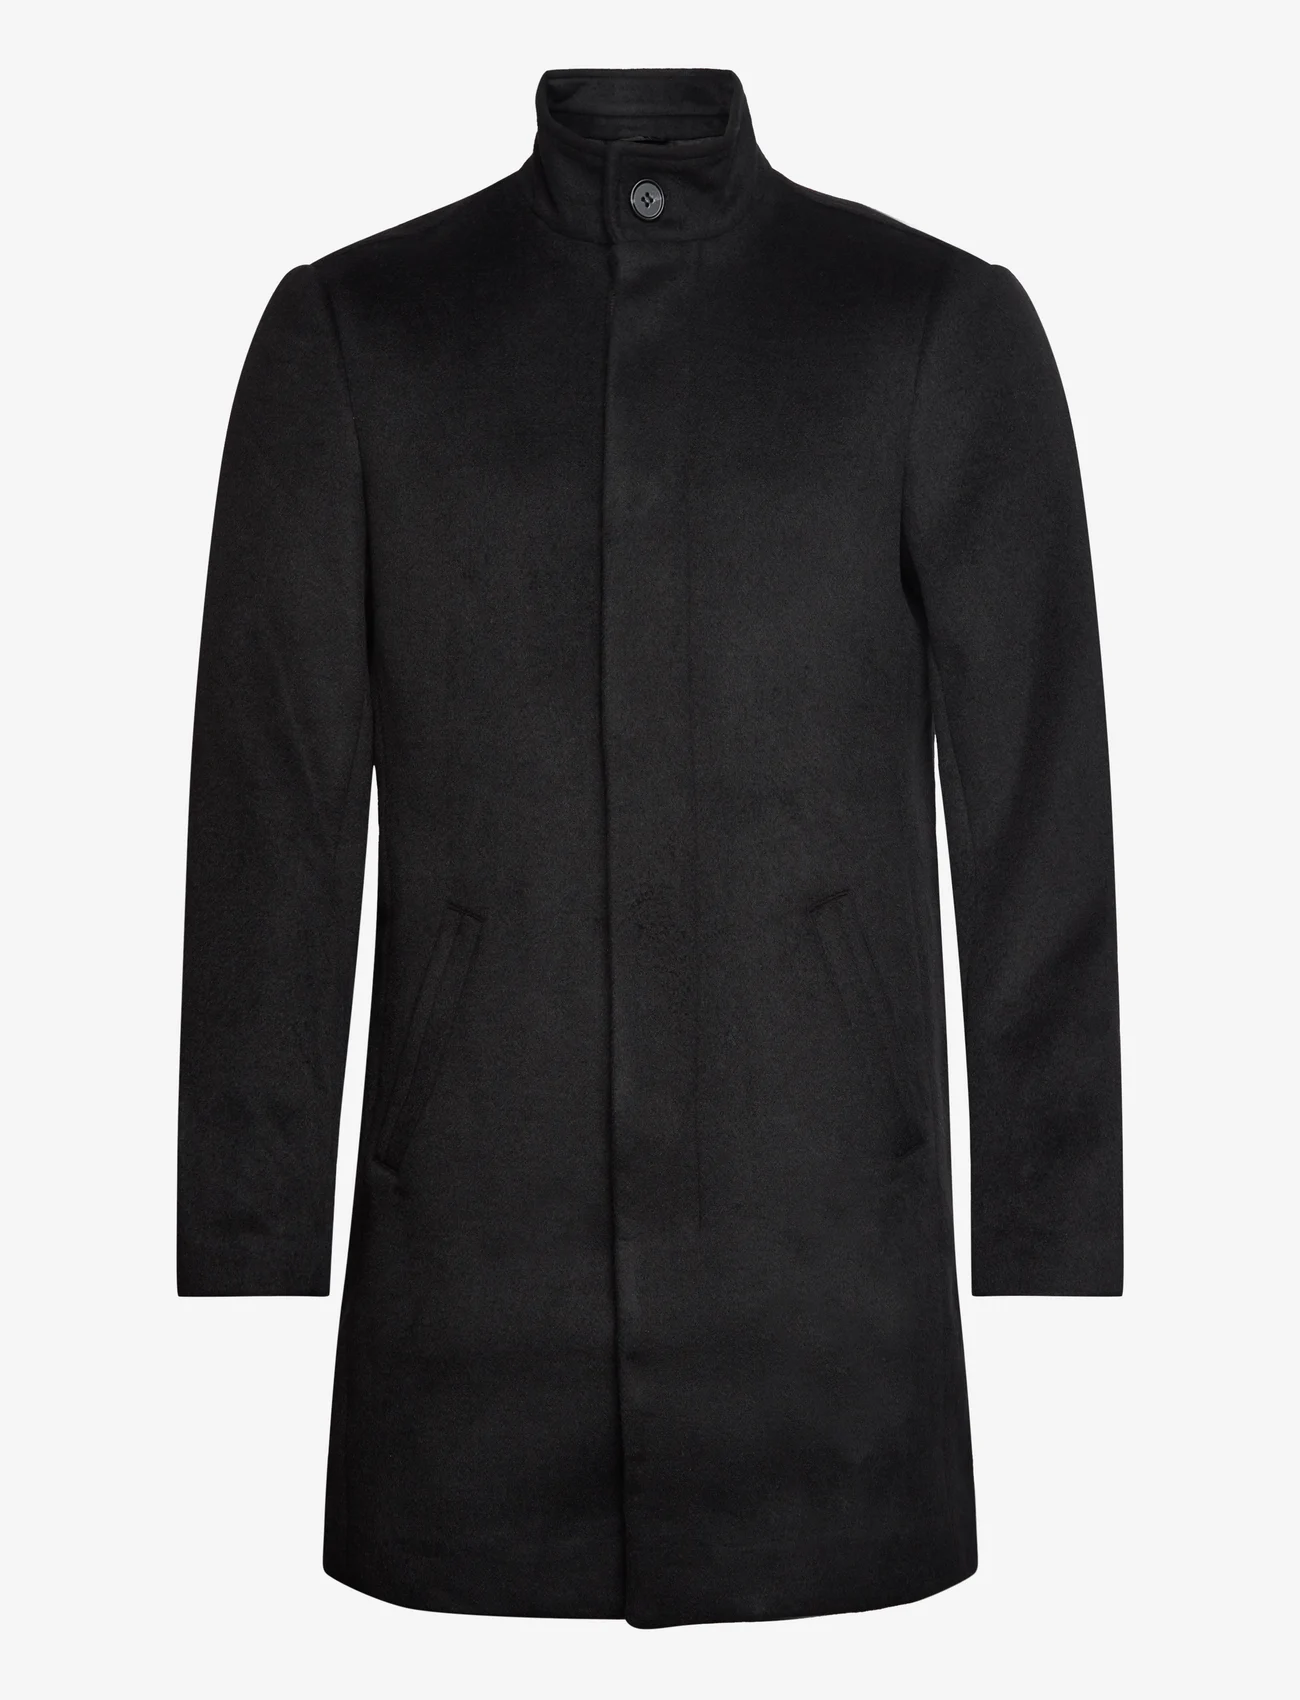 Bruuns Bazaar - KatBBAustin coat - winterjacken - black - 0